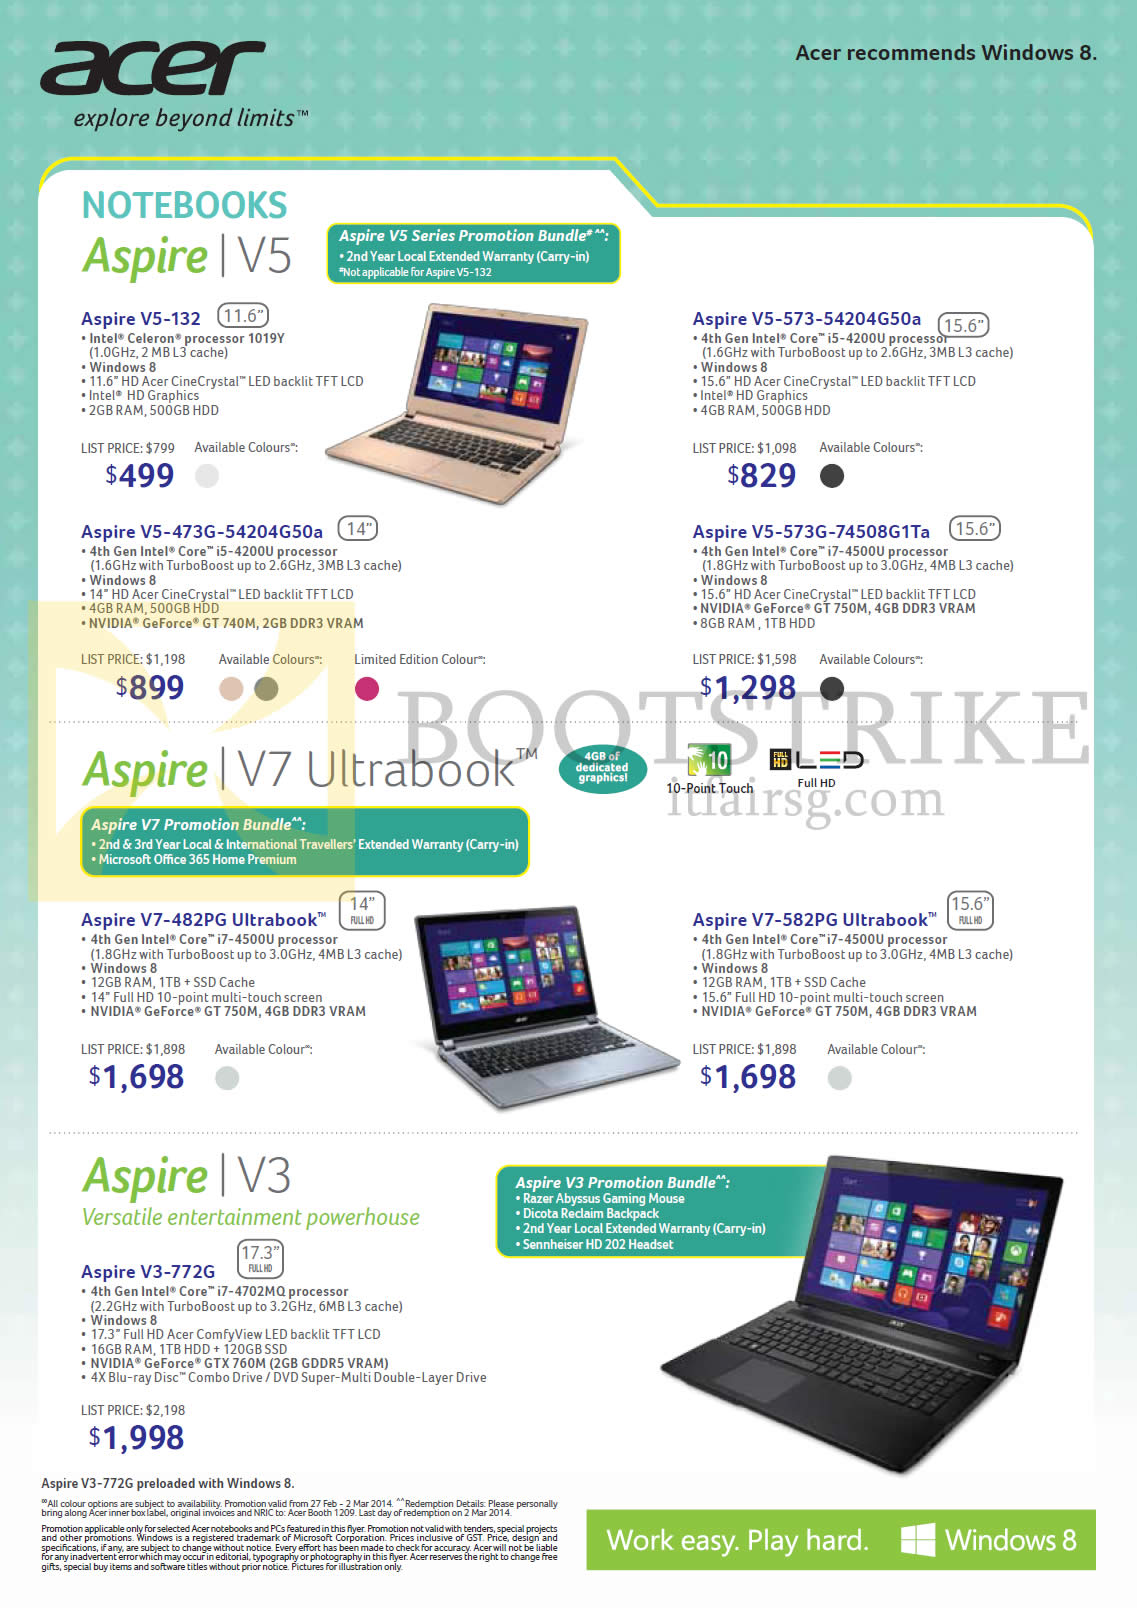 IT SHOW 2014 price list image brochure of Acer Notebooks Aspire V5-131, 473G, 573, 573G, V7-482PG, 582PG, V3-772G